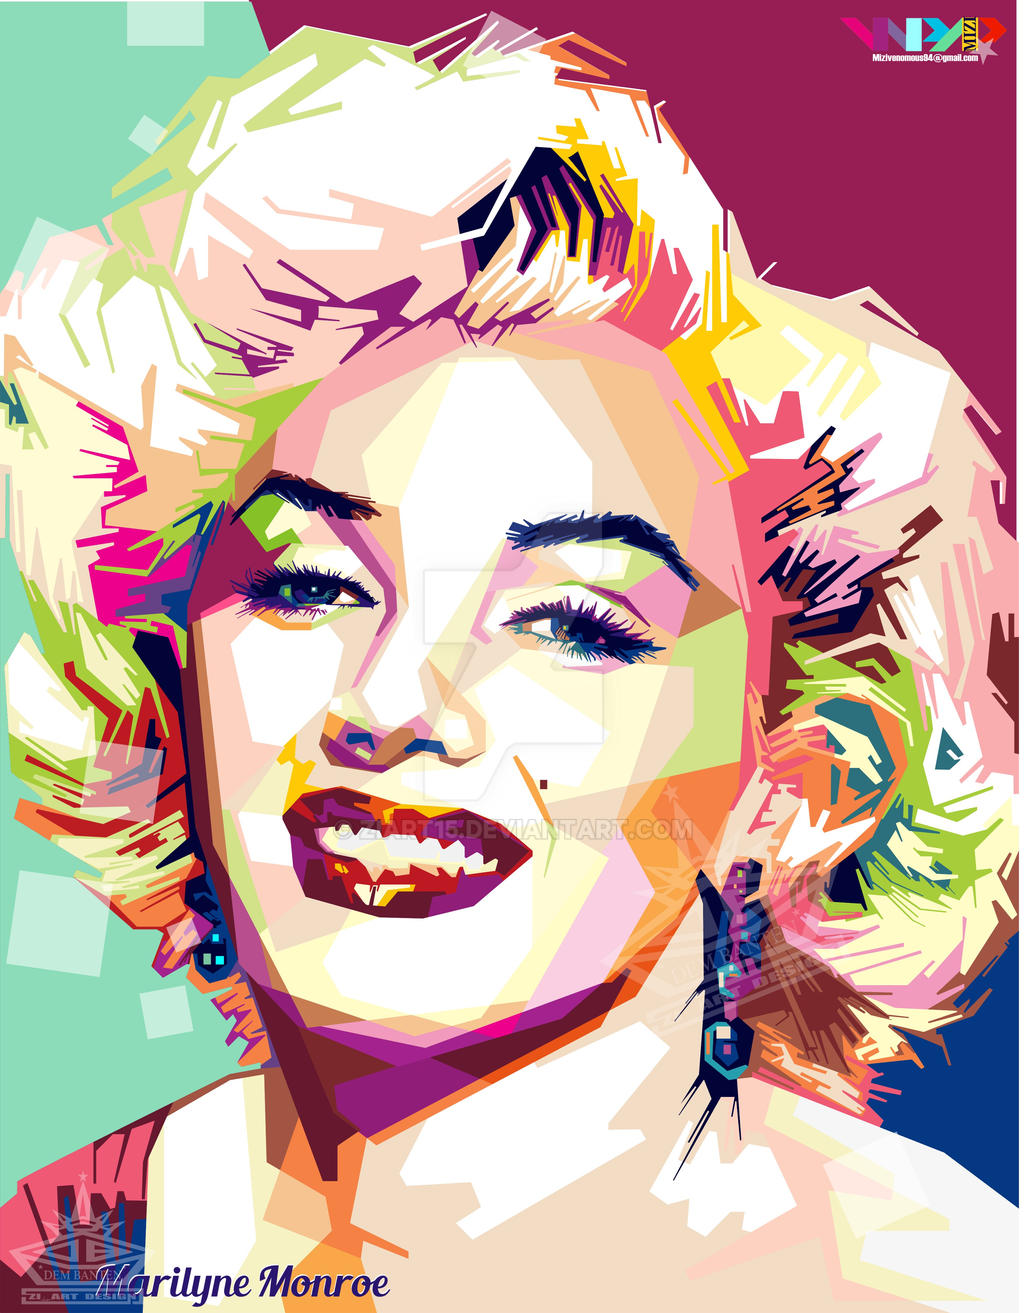 Marilyn Monroe by ZiArt15 on DeviantArt